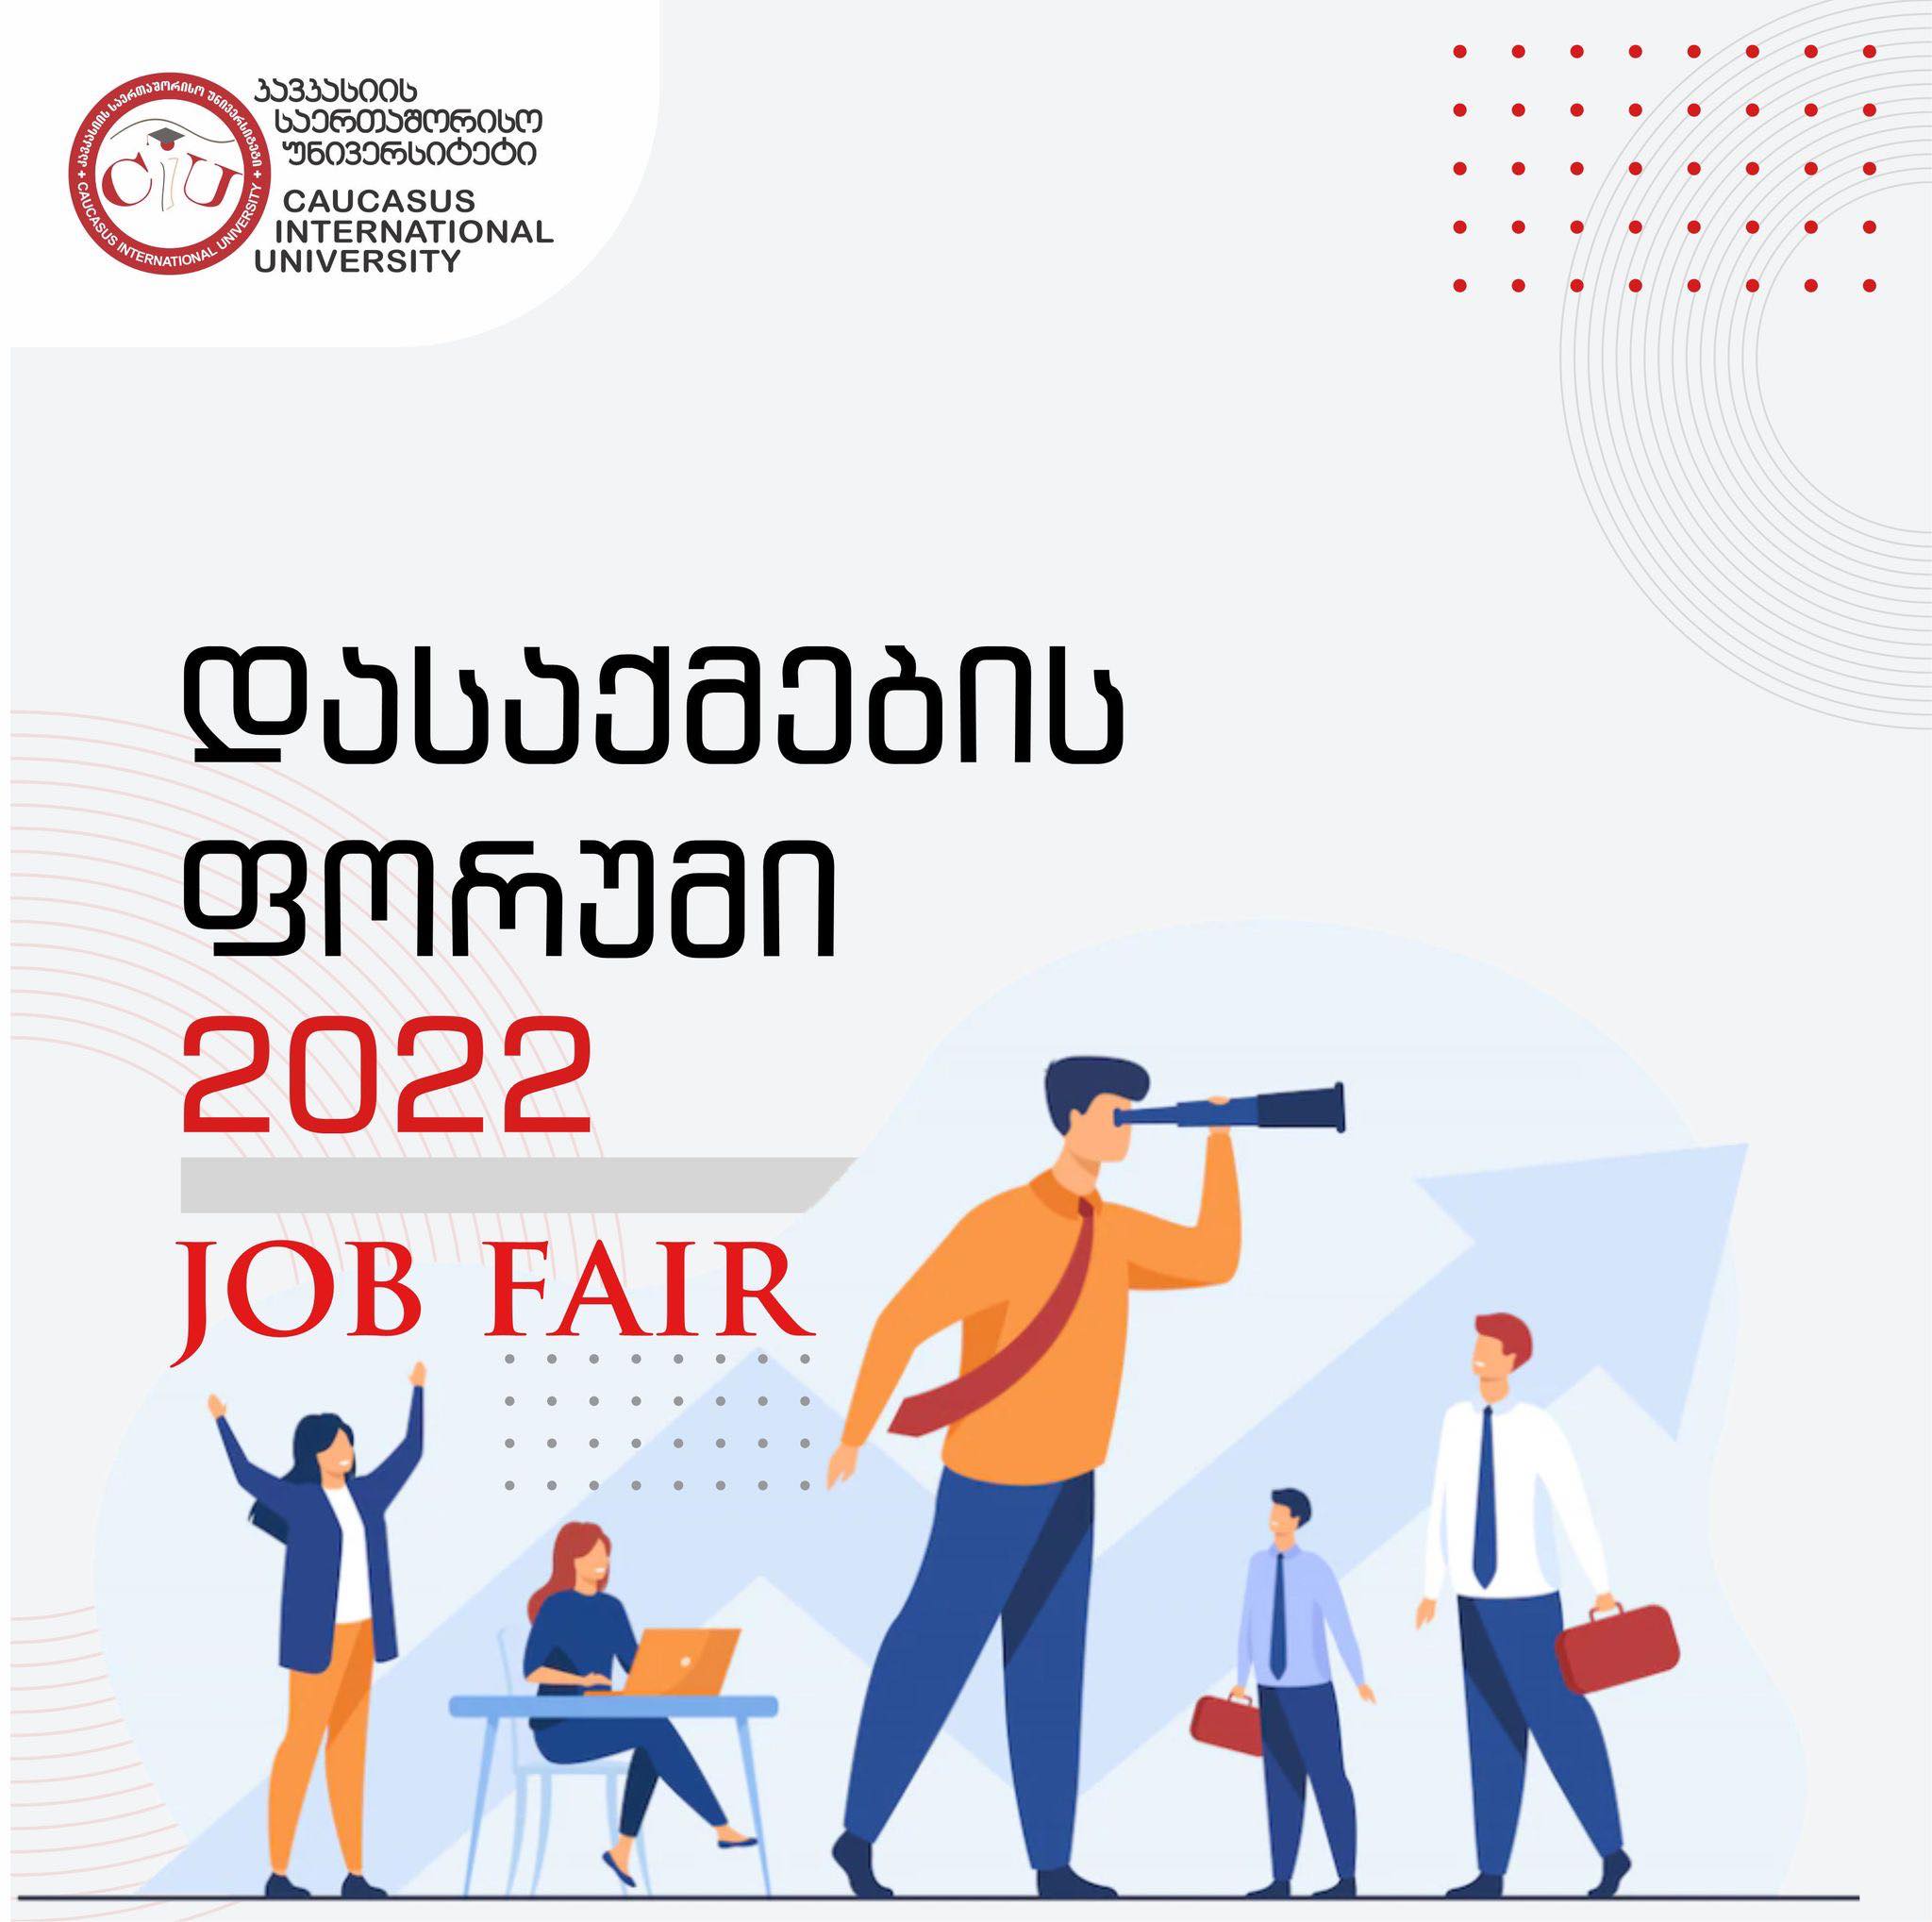 Caucasus International University Invites You to Job Fair